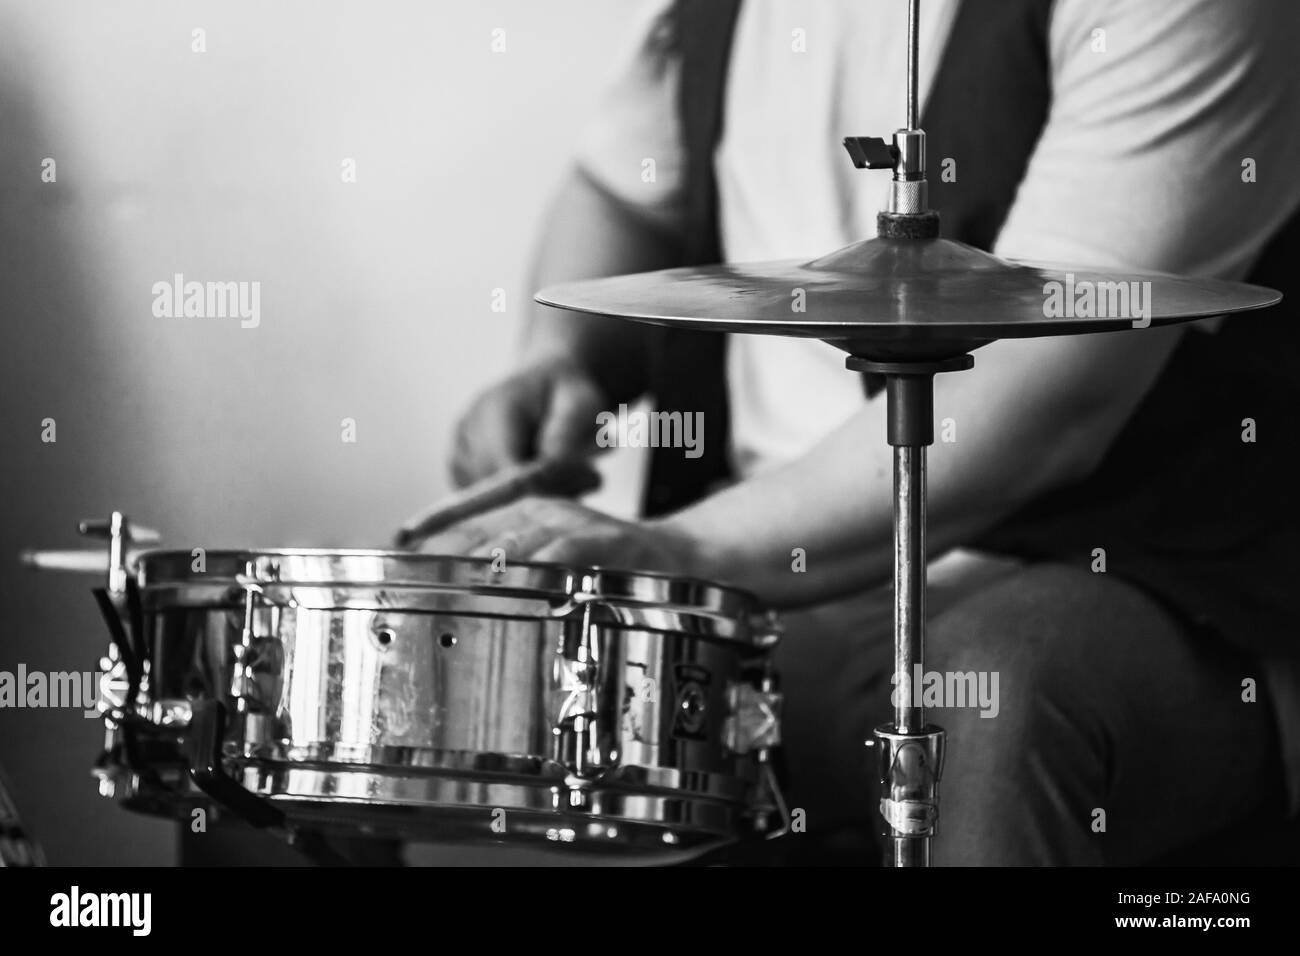 Arrière-plan de la musique live, le batteur joue avec les baguettes d'un ensemble de batterie. Libre retro photo noir et blanc stylisé Banque D'Images